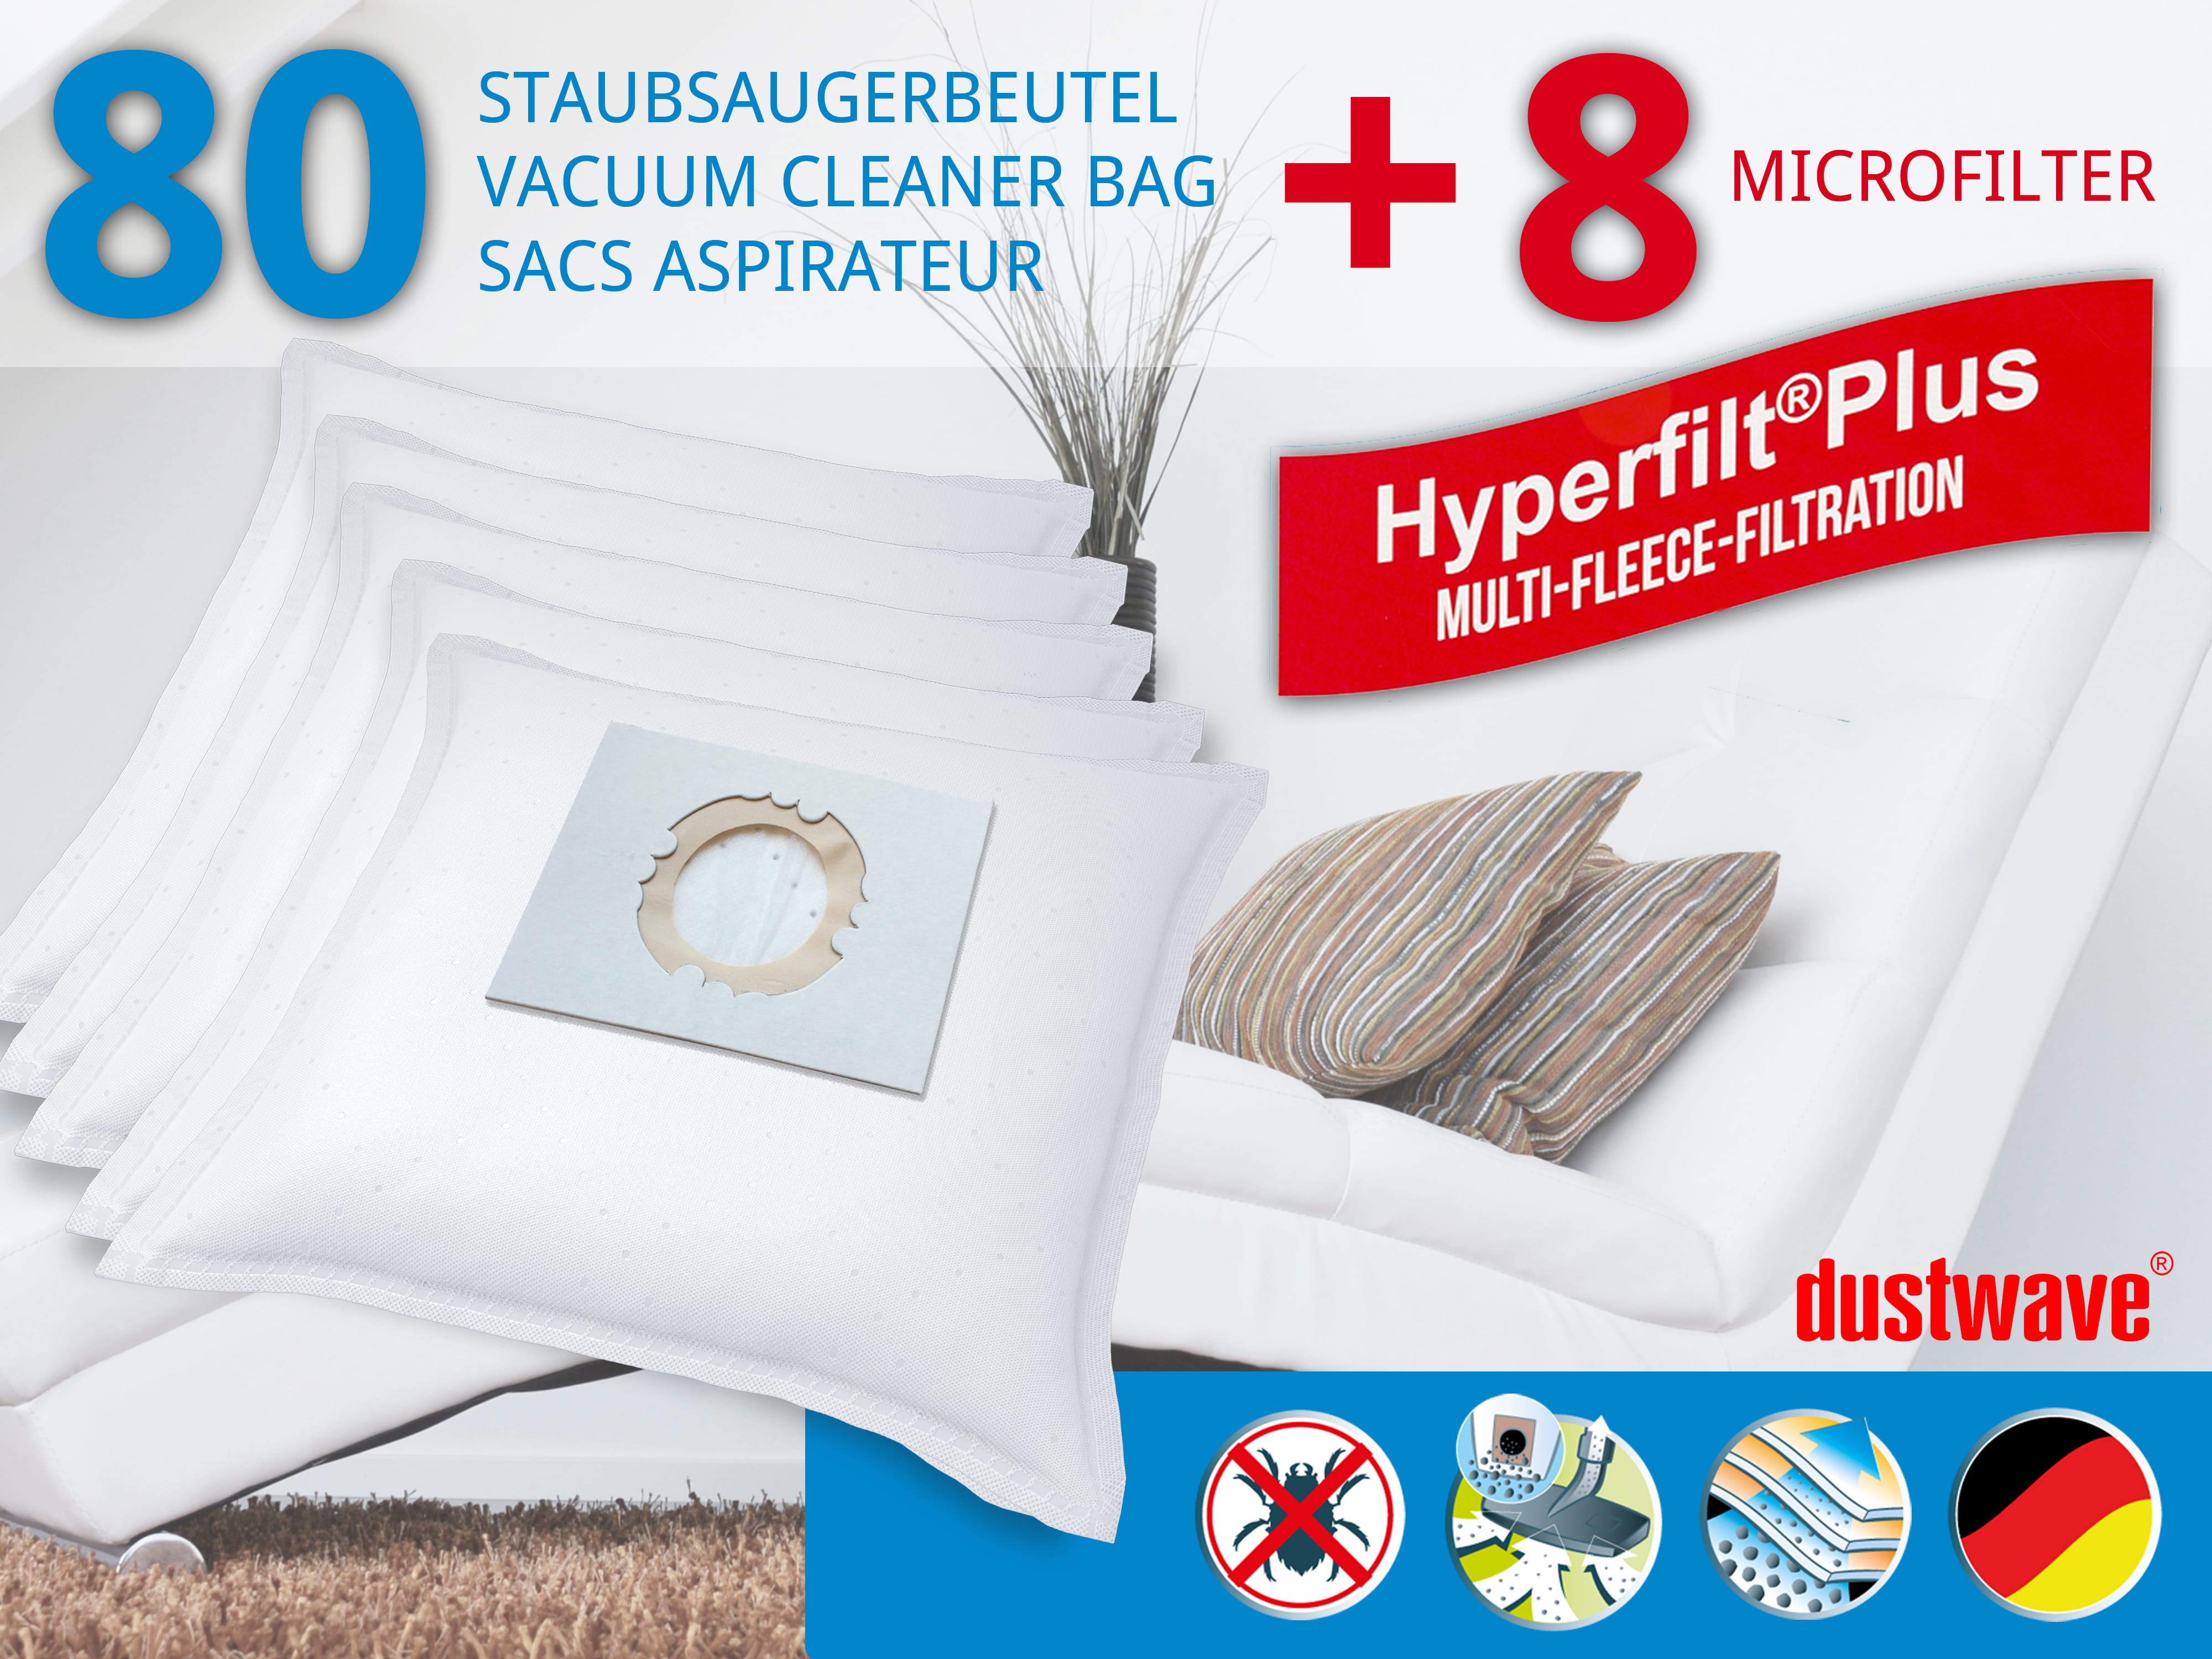 80x dustwave® Staubsaugerbeutel Hohe Filtration 'Filter Flo' für Numatic Henry Hetty etc. Staubsauger / Markenfiltertüten - Made in Germany